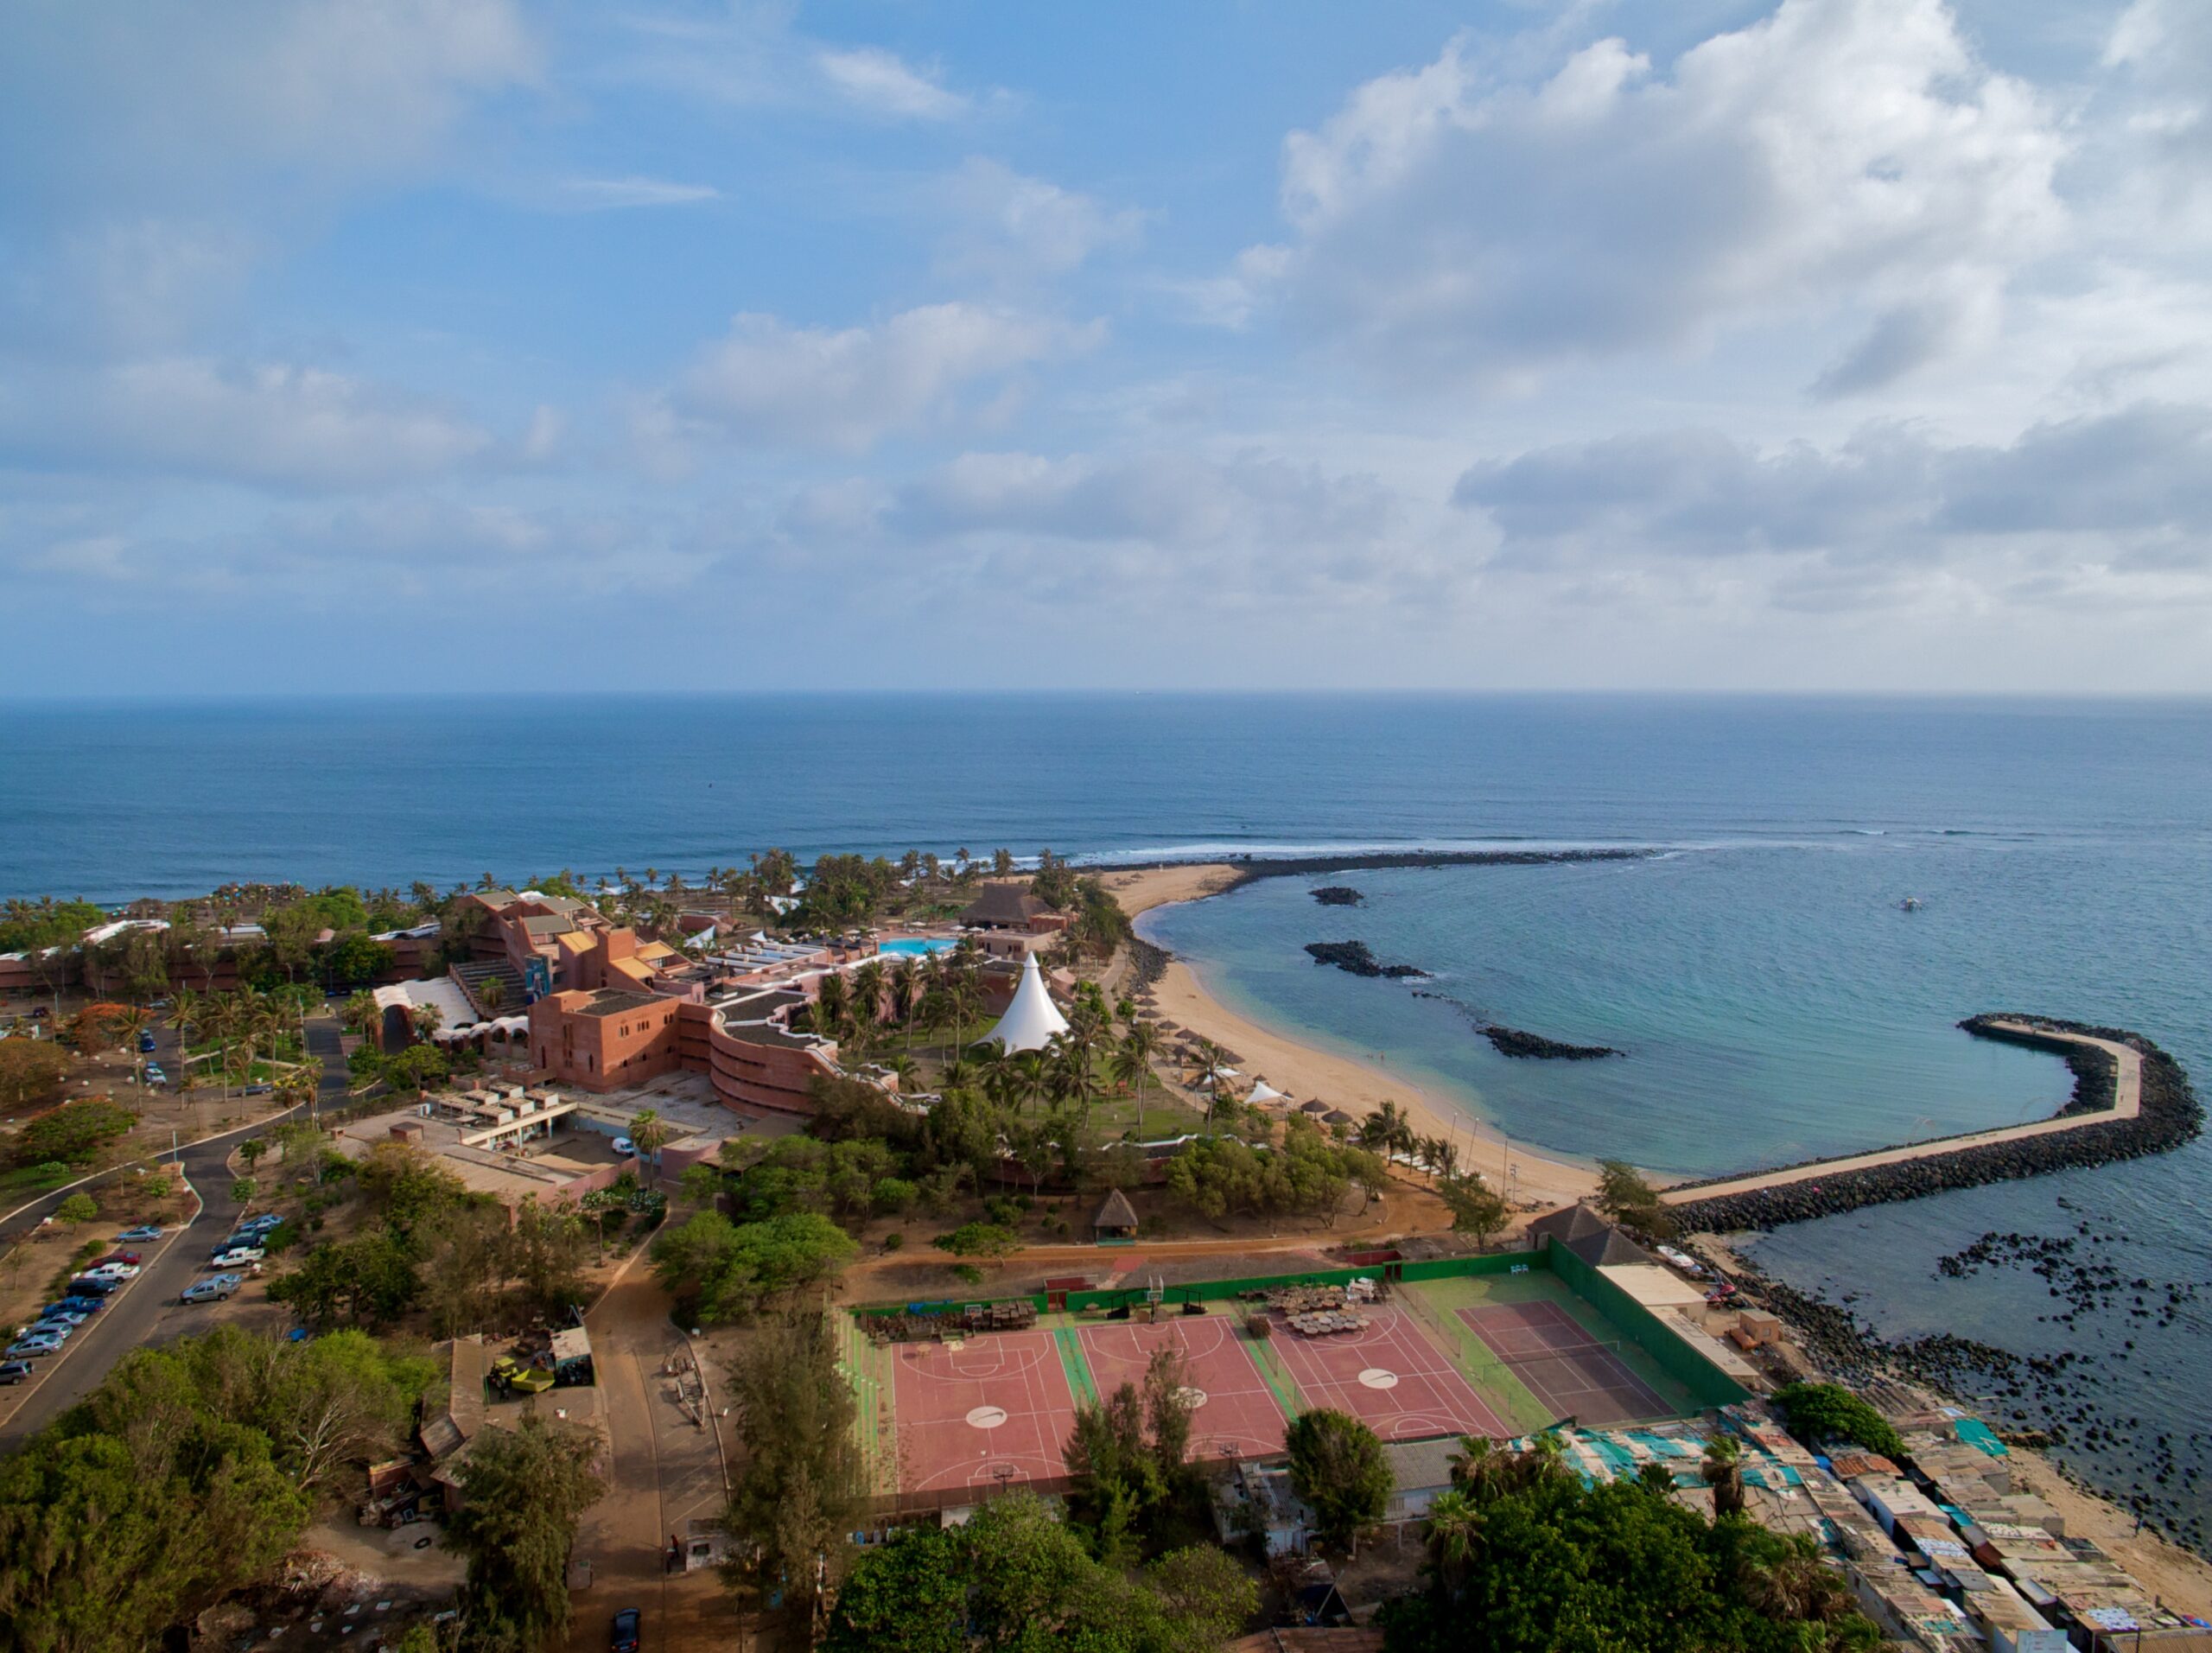 Almadie, Senegal